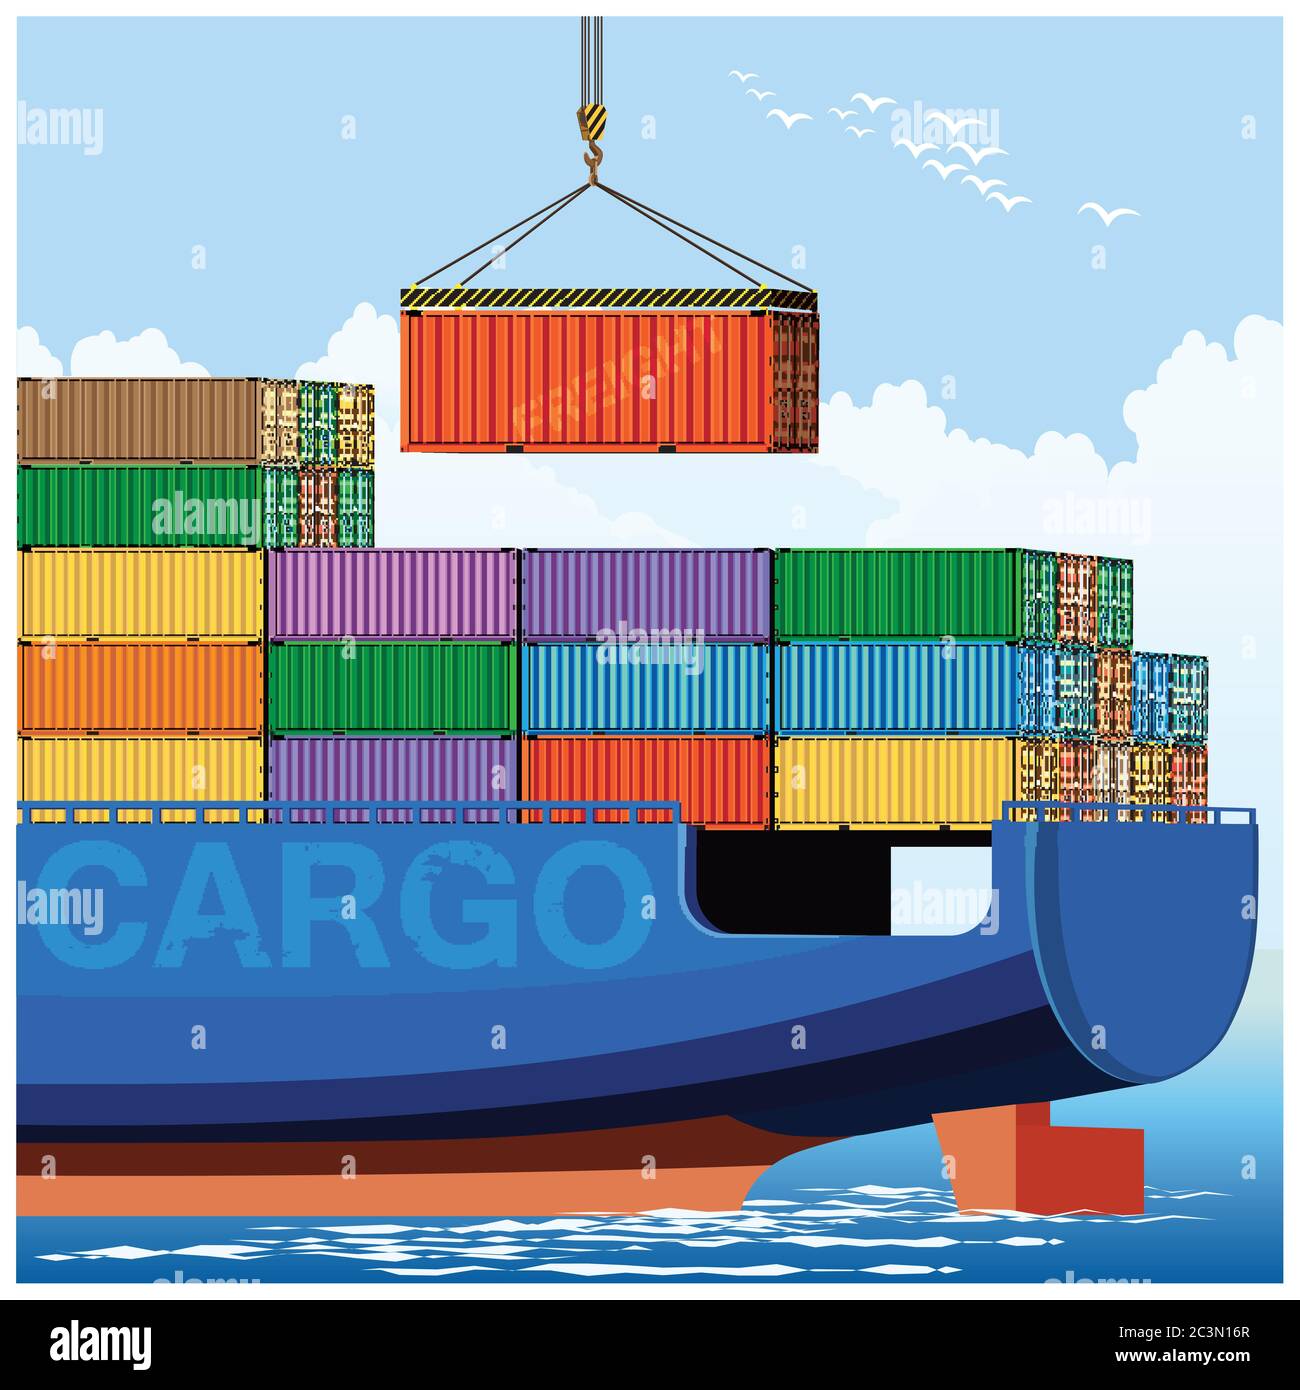 Stilisierte Vektordarstellung der Verladung von Containern auf einem Frachtschiff Stock Vektor